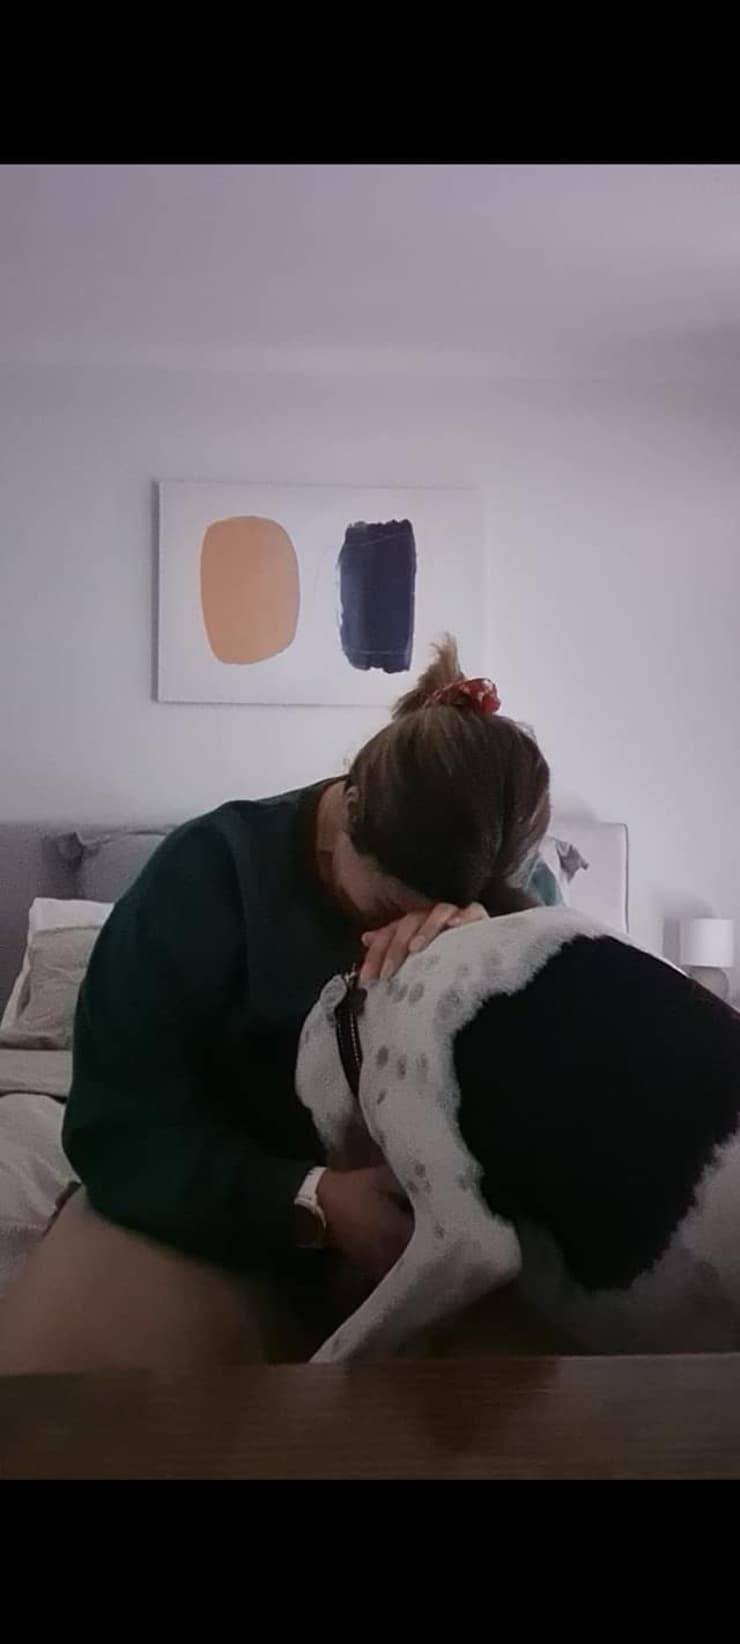 Narla il cane che ha salvato la donna dalla depressione (Foto Facebook)